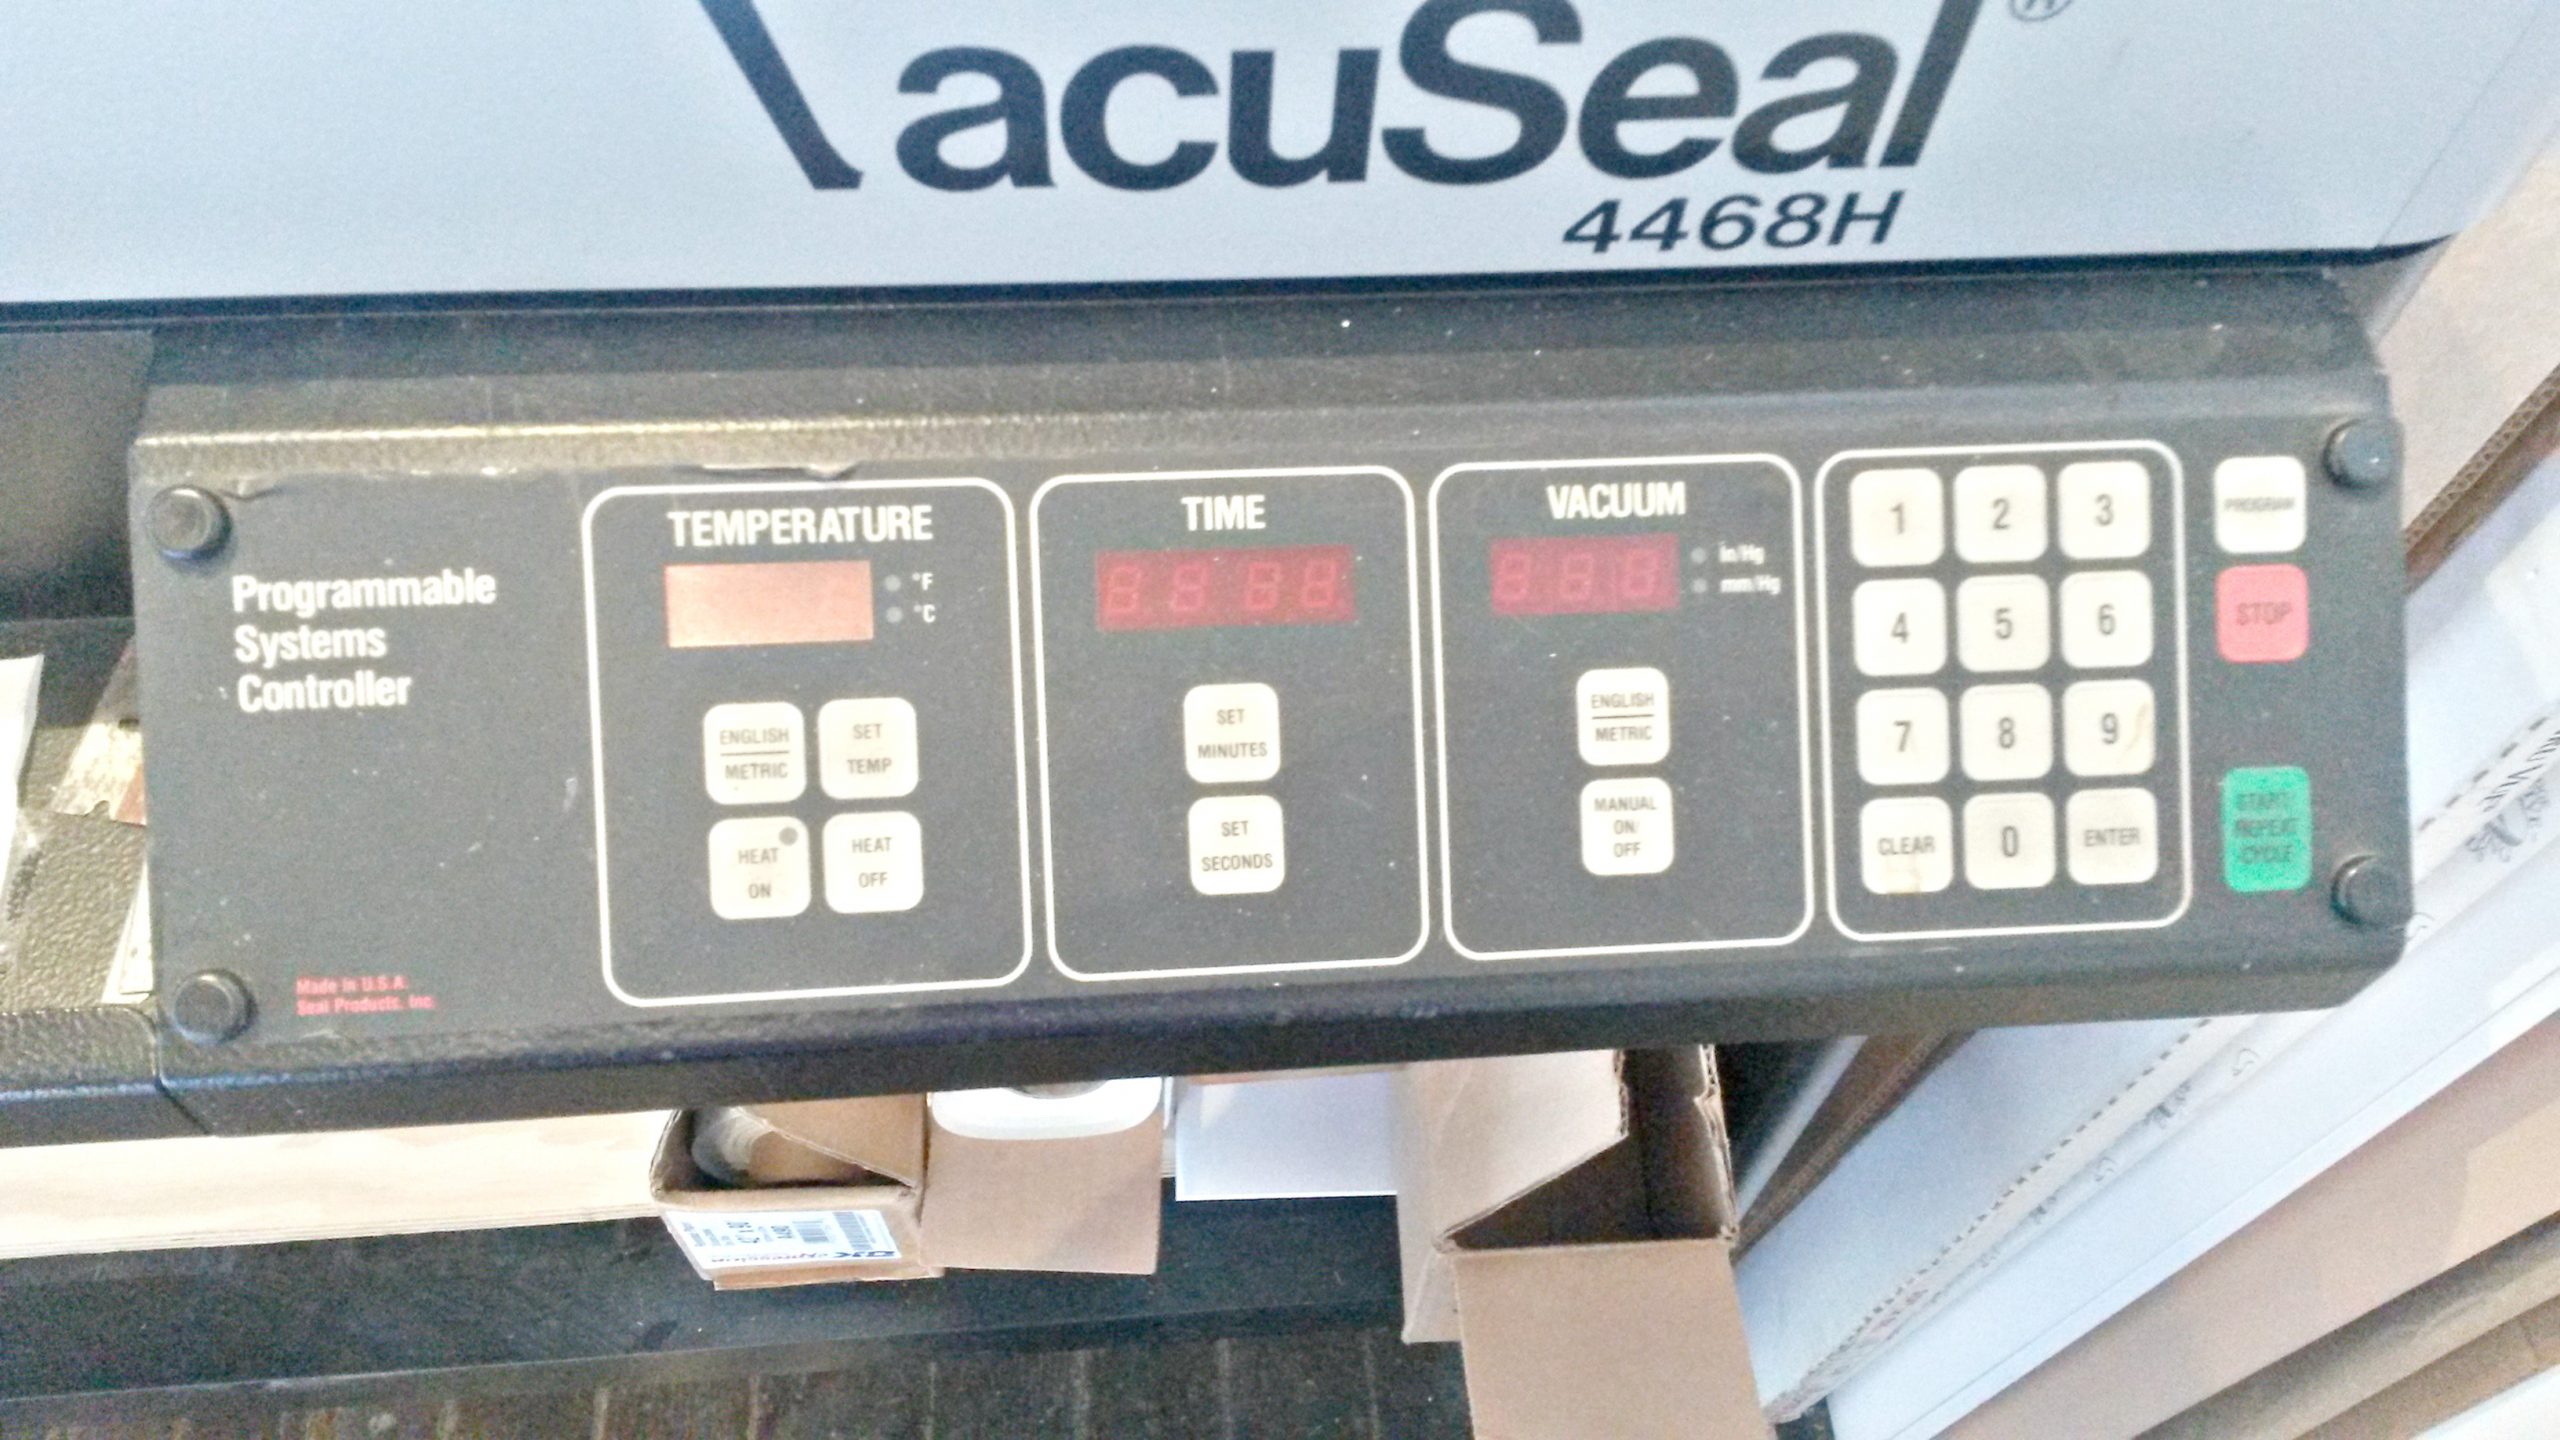 Vacuseal Bienfang 4468H Vacuum Dry Mount Press (Used) Item # UFE-M1752